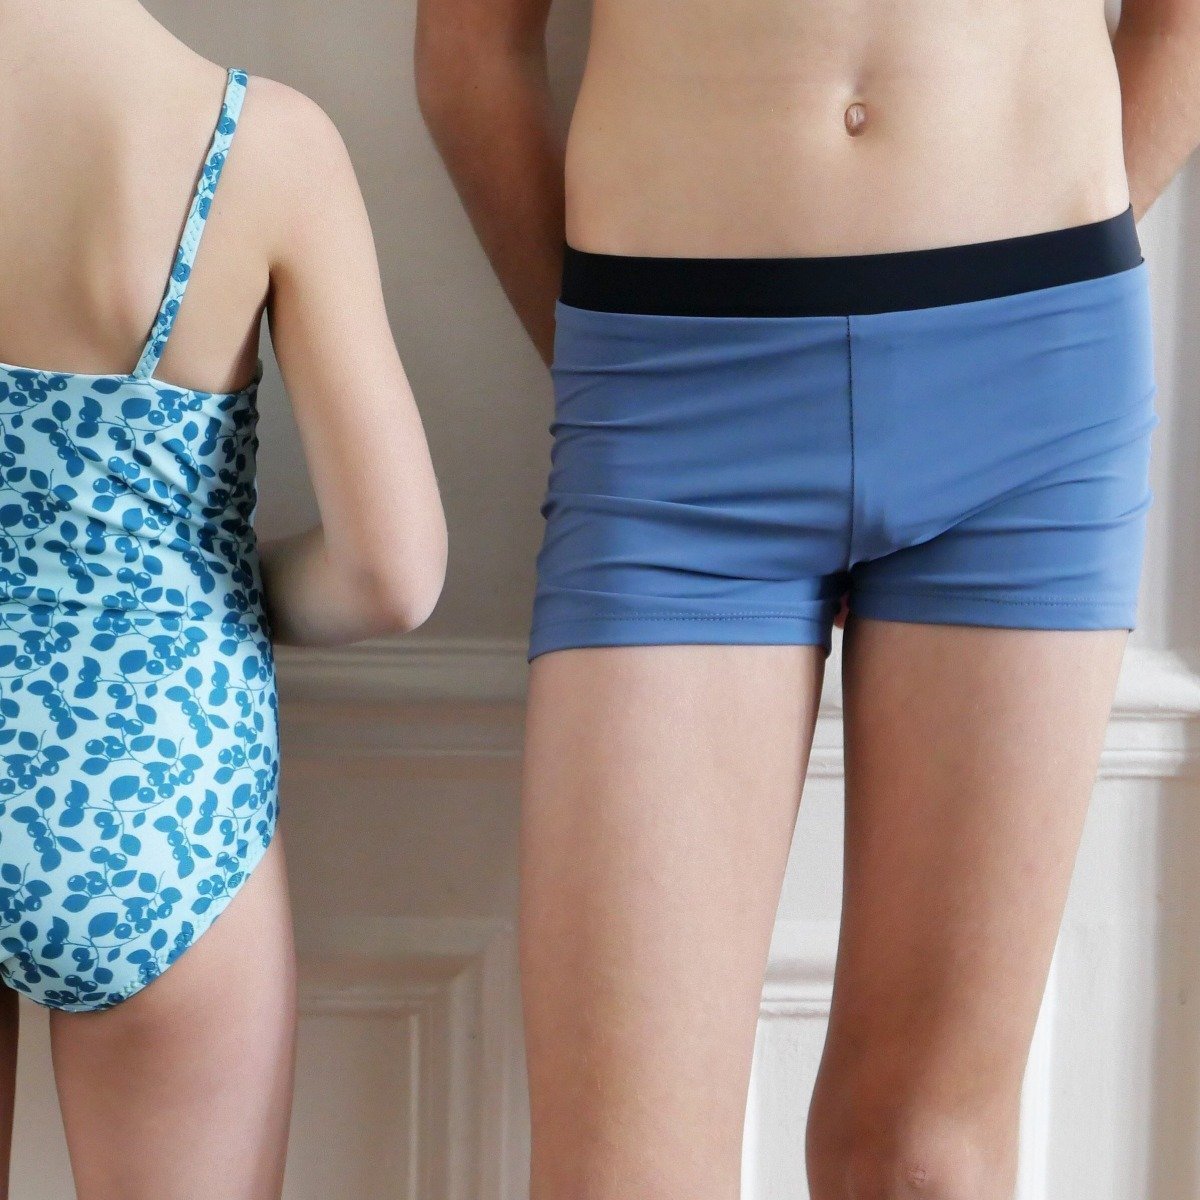 Ikatee - SEBASTIEN Underwear set + Swimsuit - Kids 3-12Y - Paper Sewing Pattern